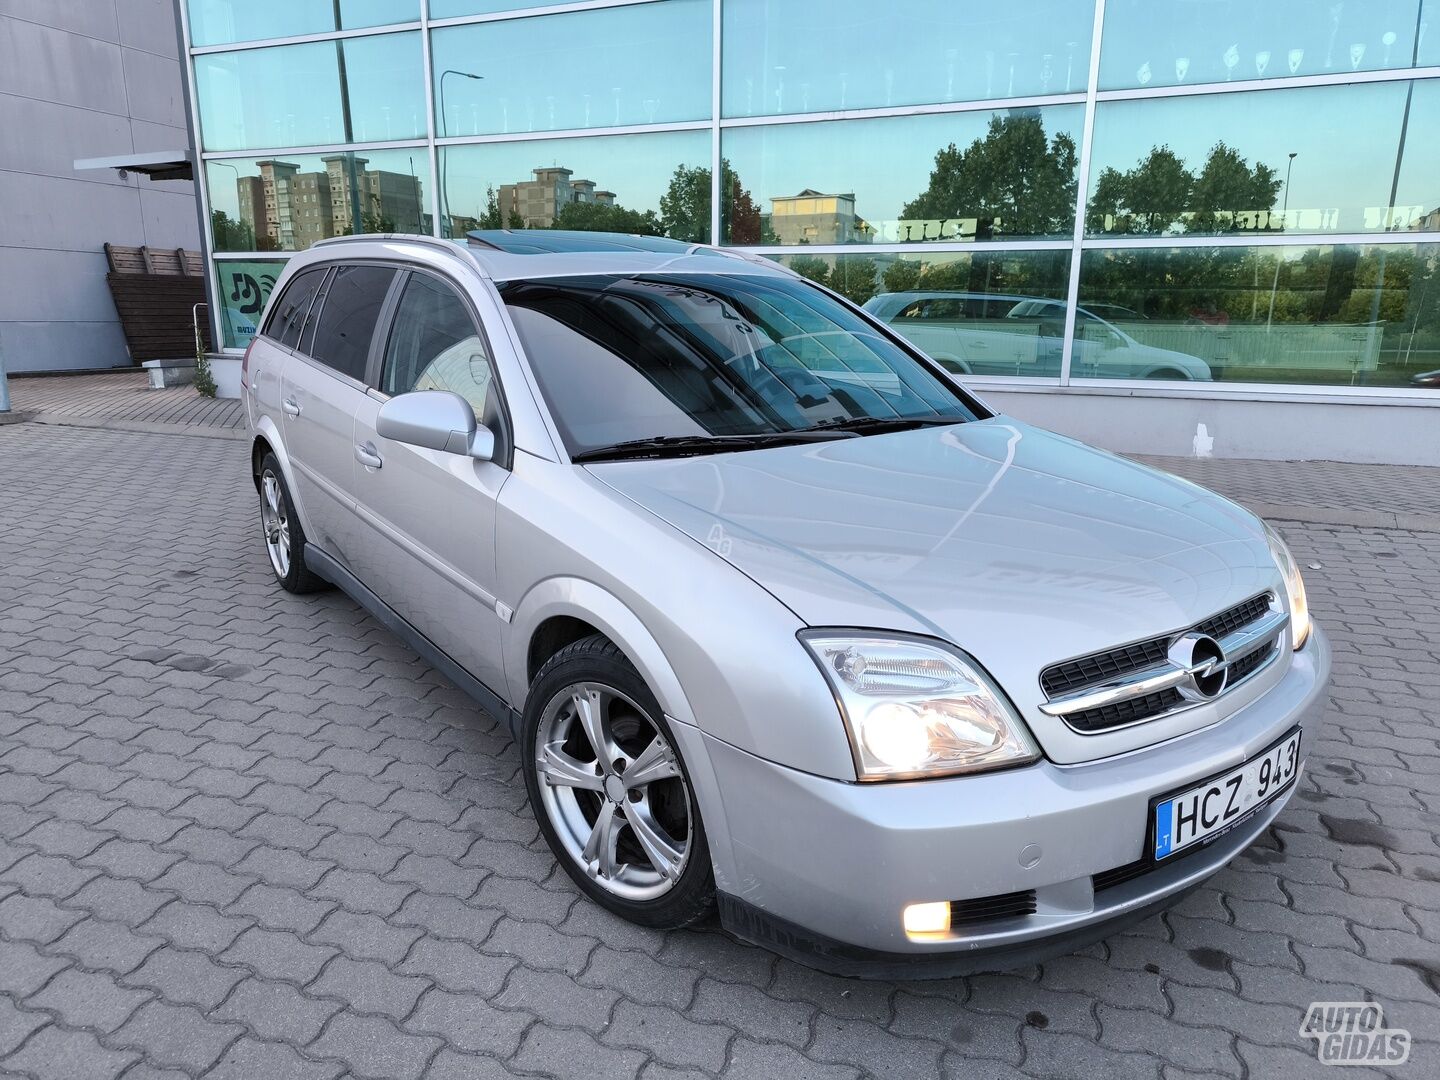 Opel Vectra C DTI Comfort 2004 г